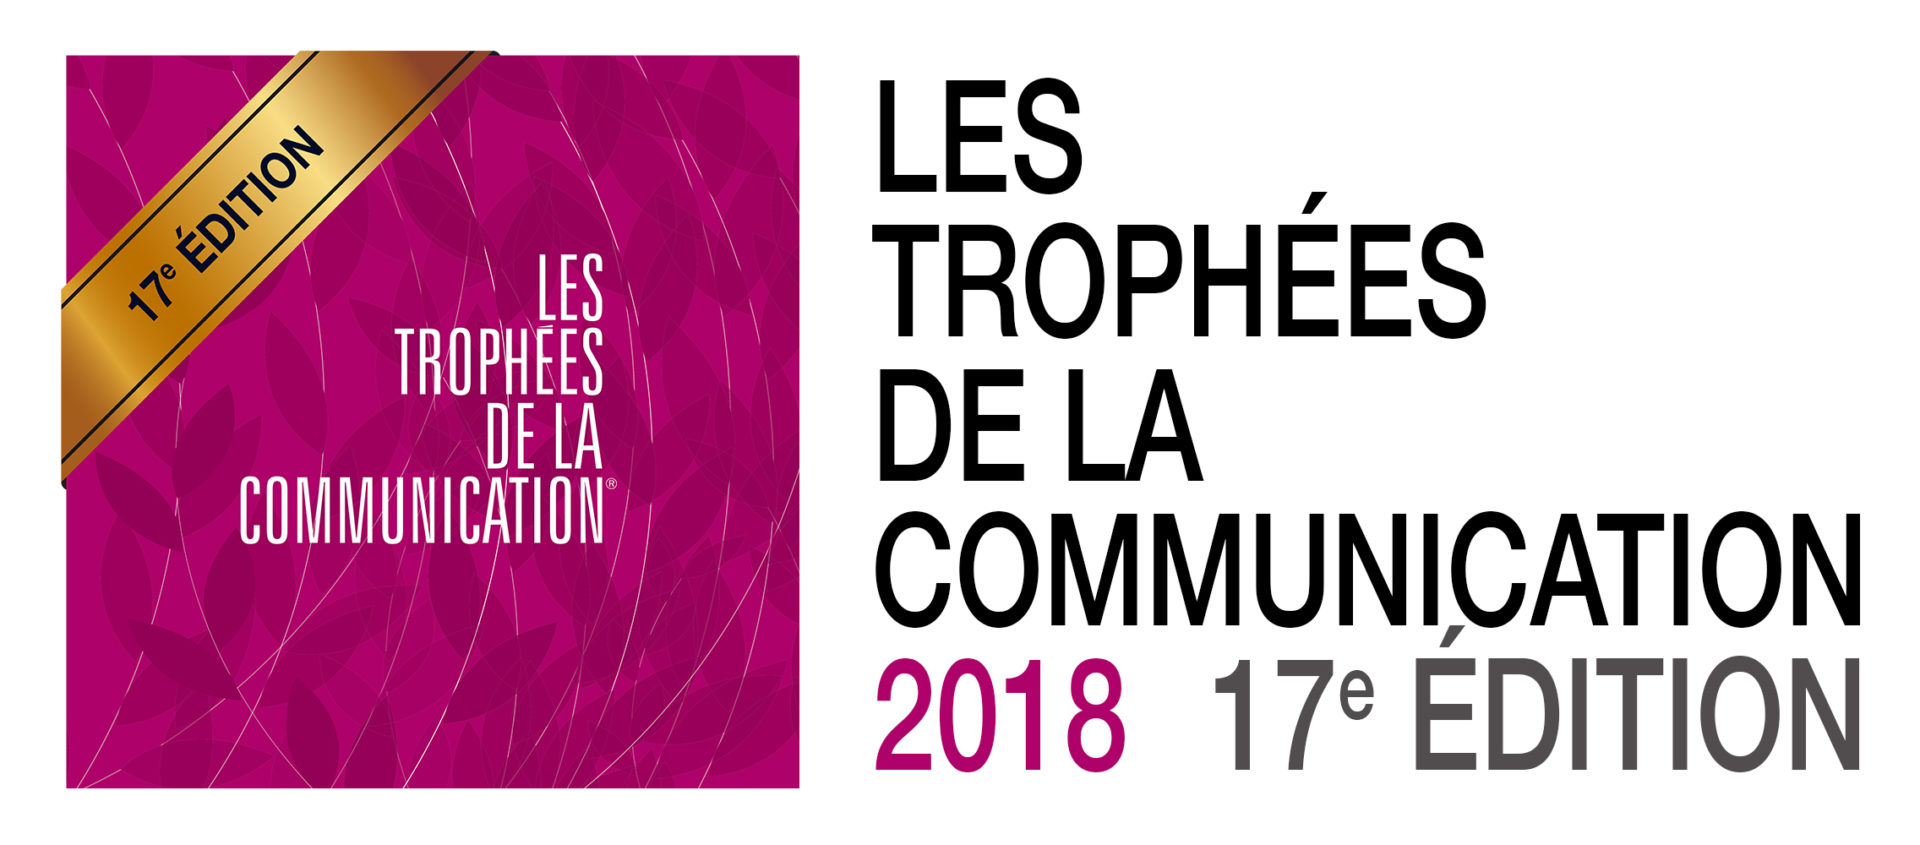 Trophées de la co 2018 - Schenker France